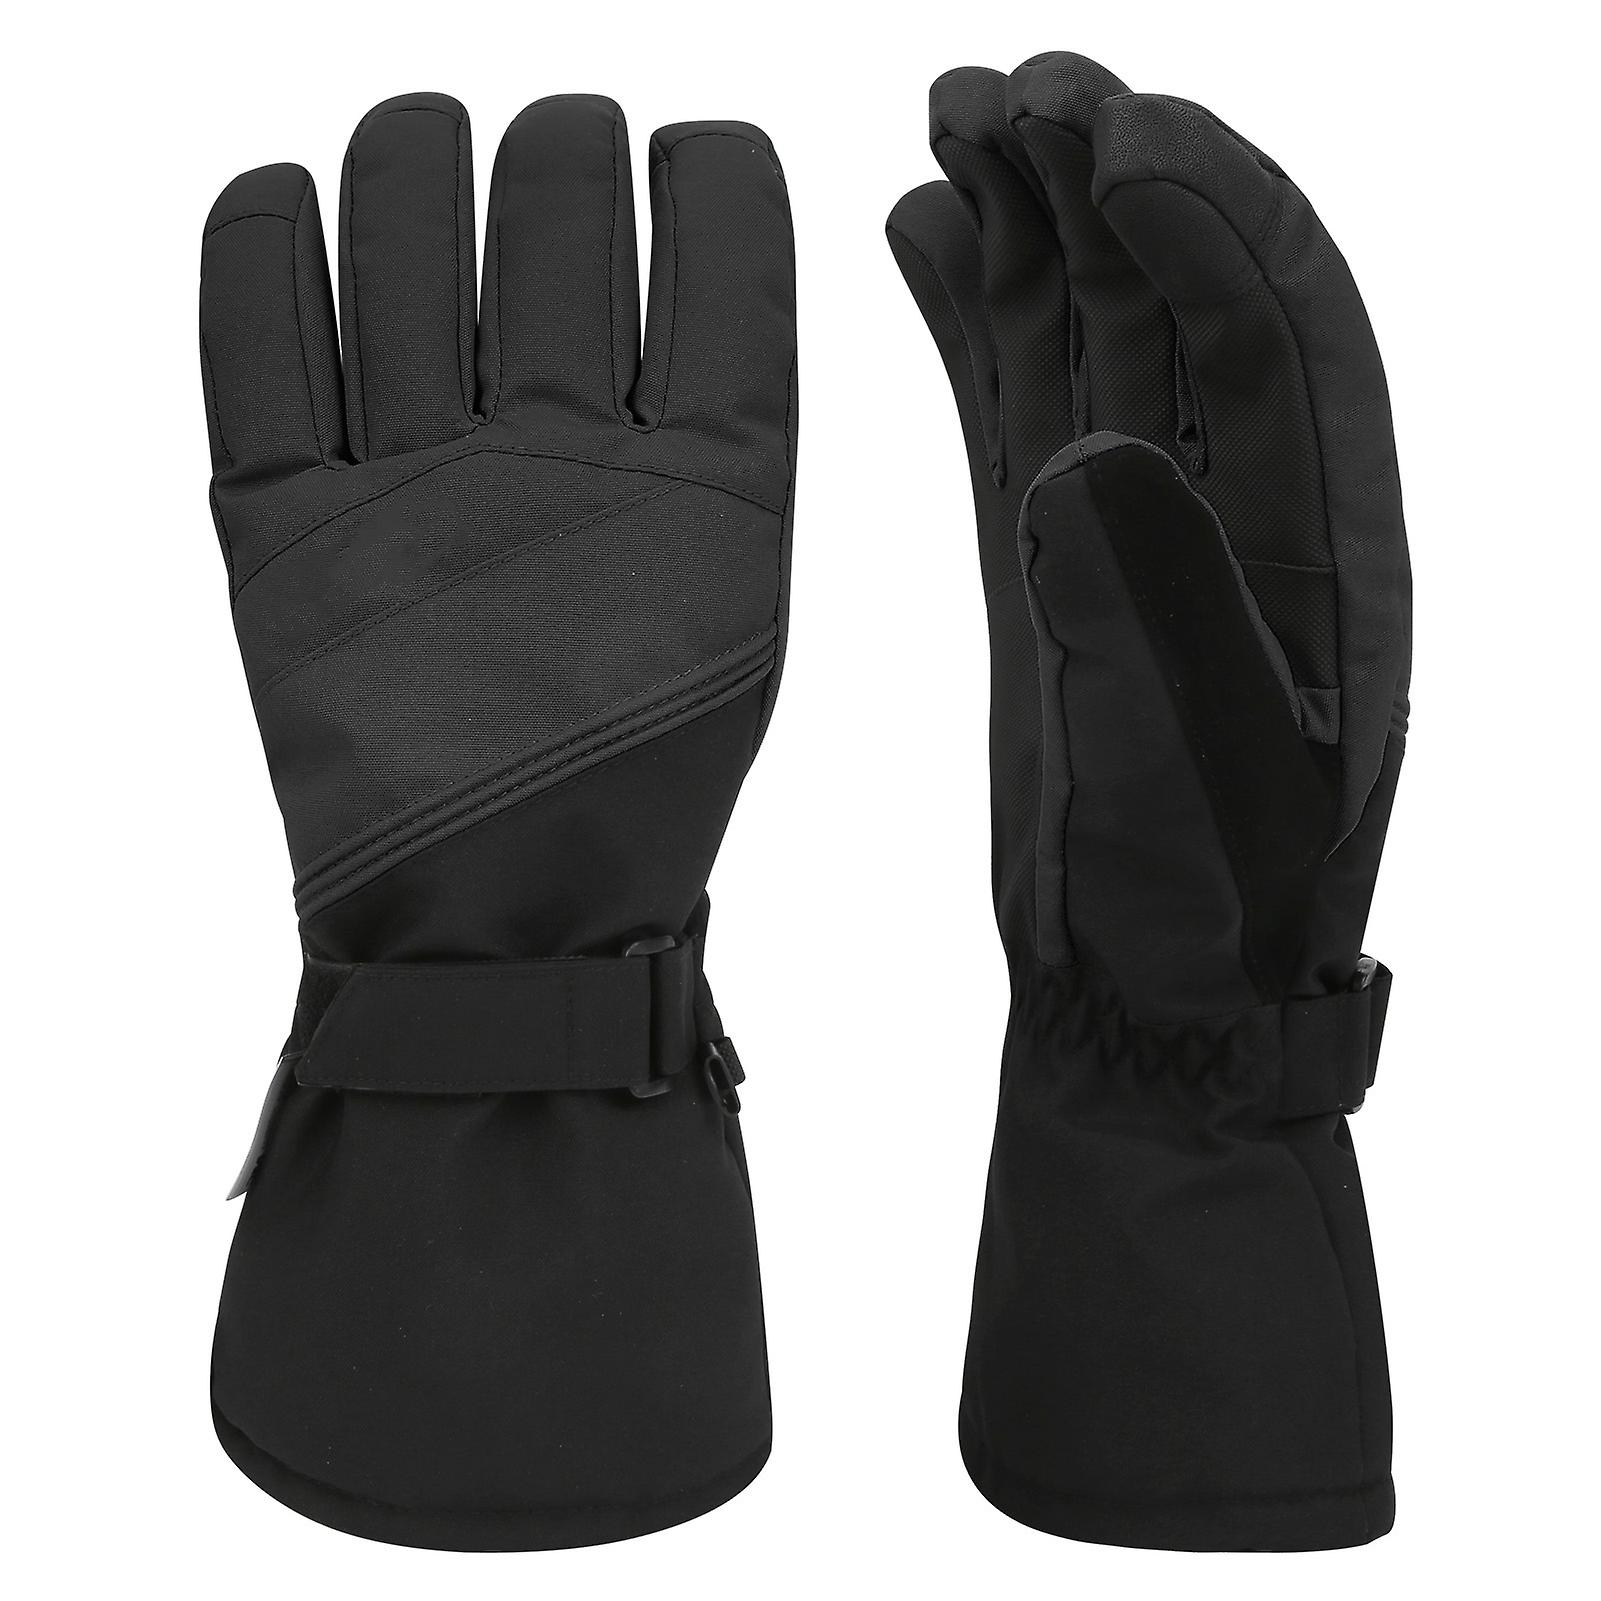 1pair Winter Outdoor Sport Skiing Brushed Lining Waterproof Keep Warm Antislip Glovesxl Black